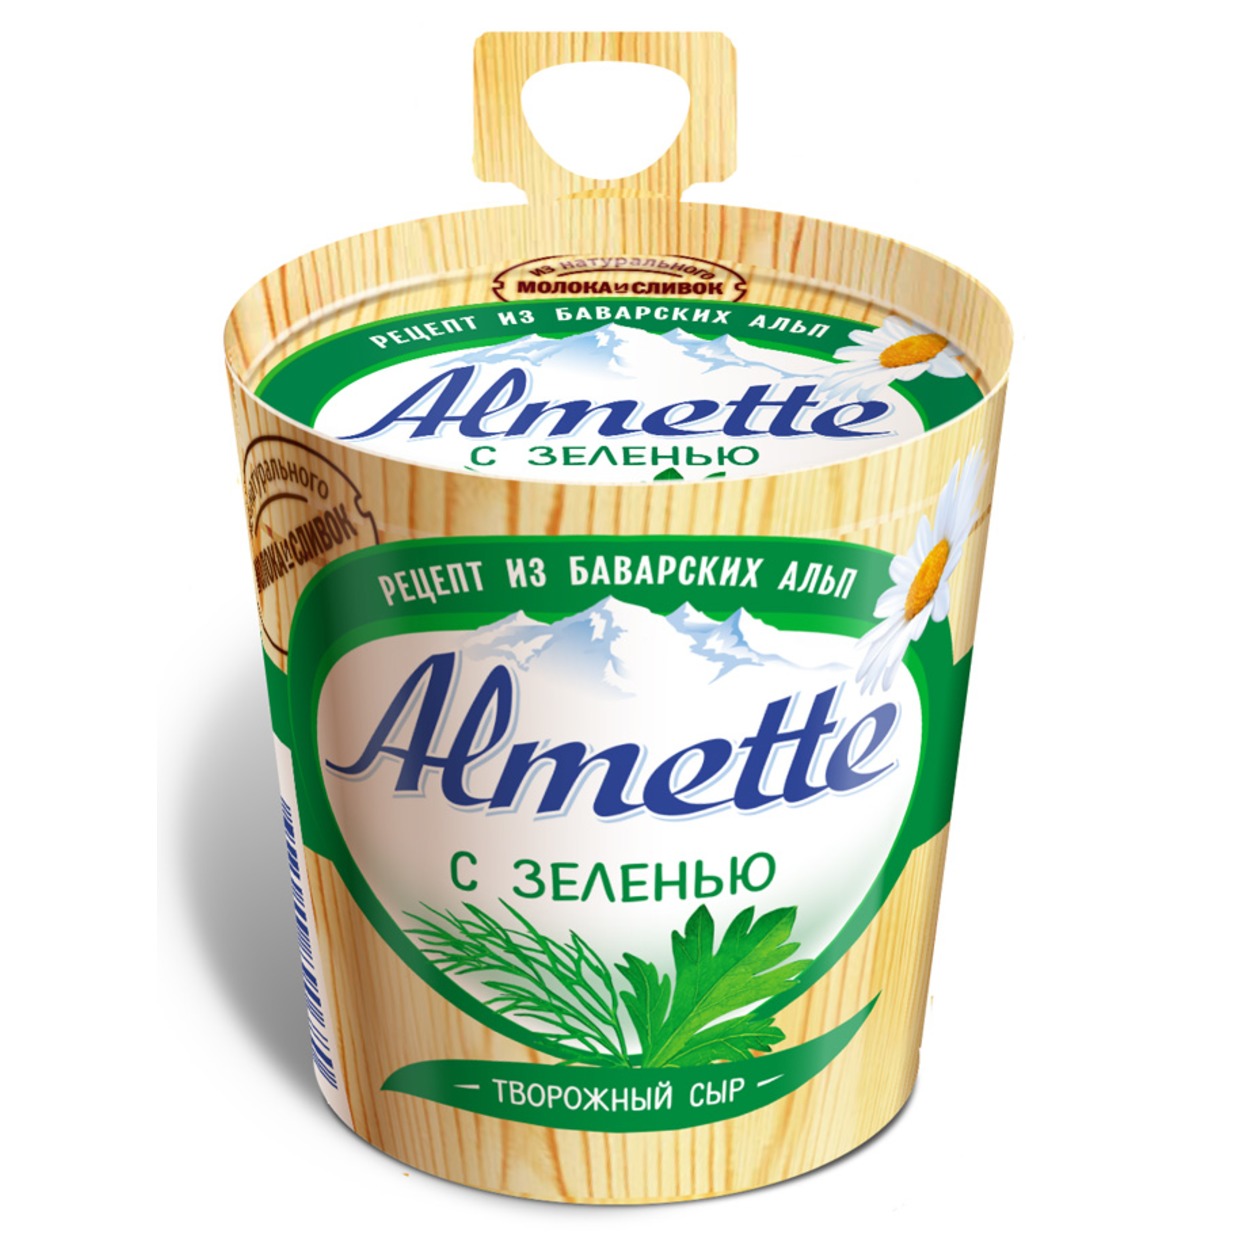 Сыр Almette творожный с зеленью 60% 150г по акции в Пятерочке